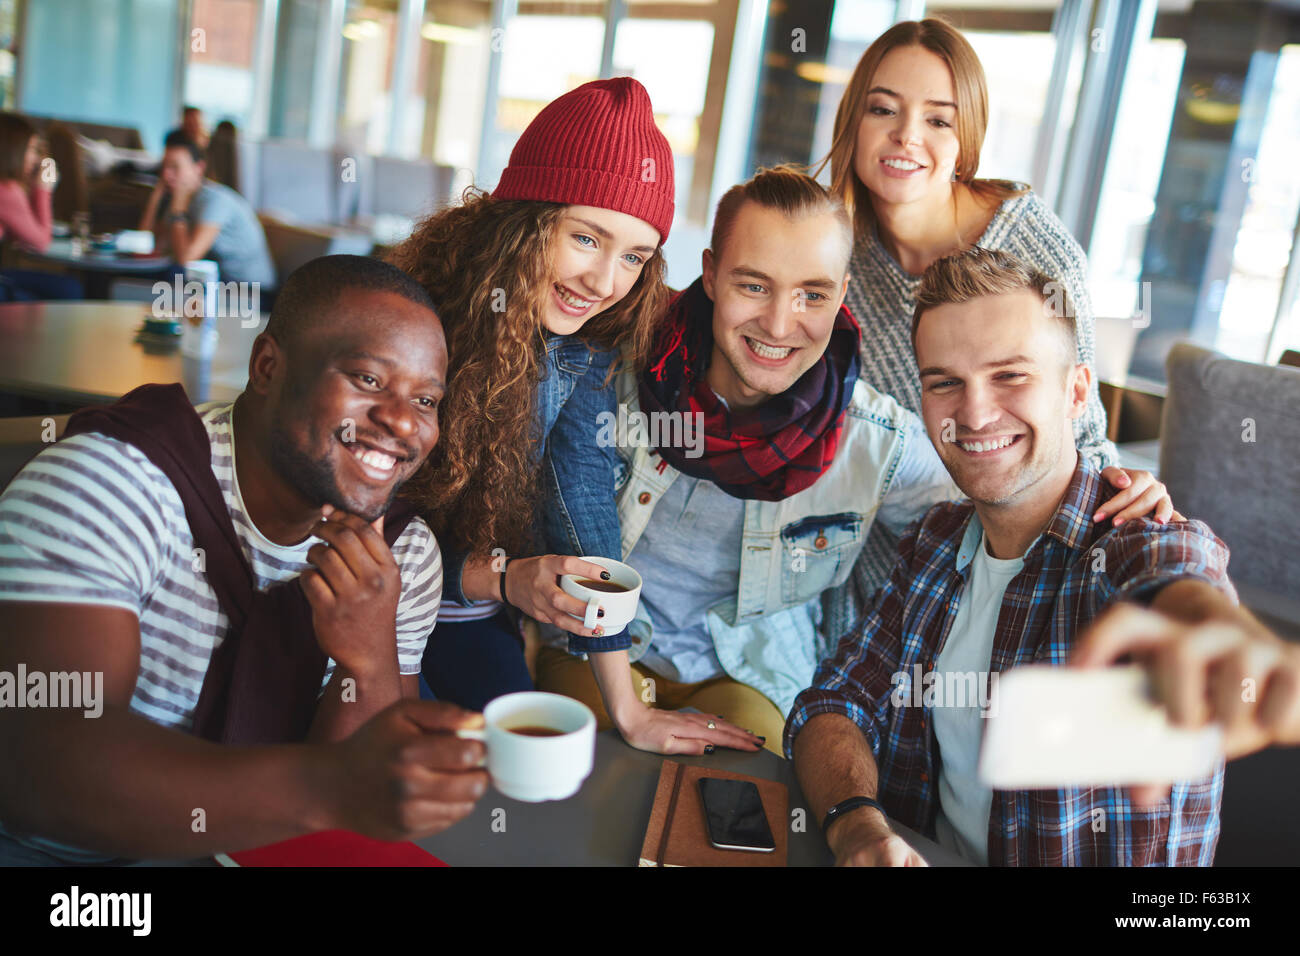 Los adolescentes haciendo selfie amistosa en cafe Foto de stock